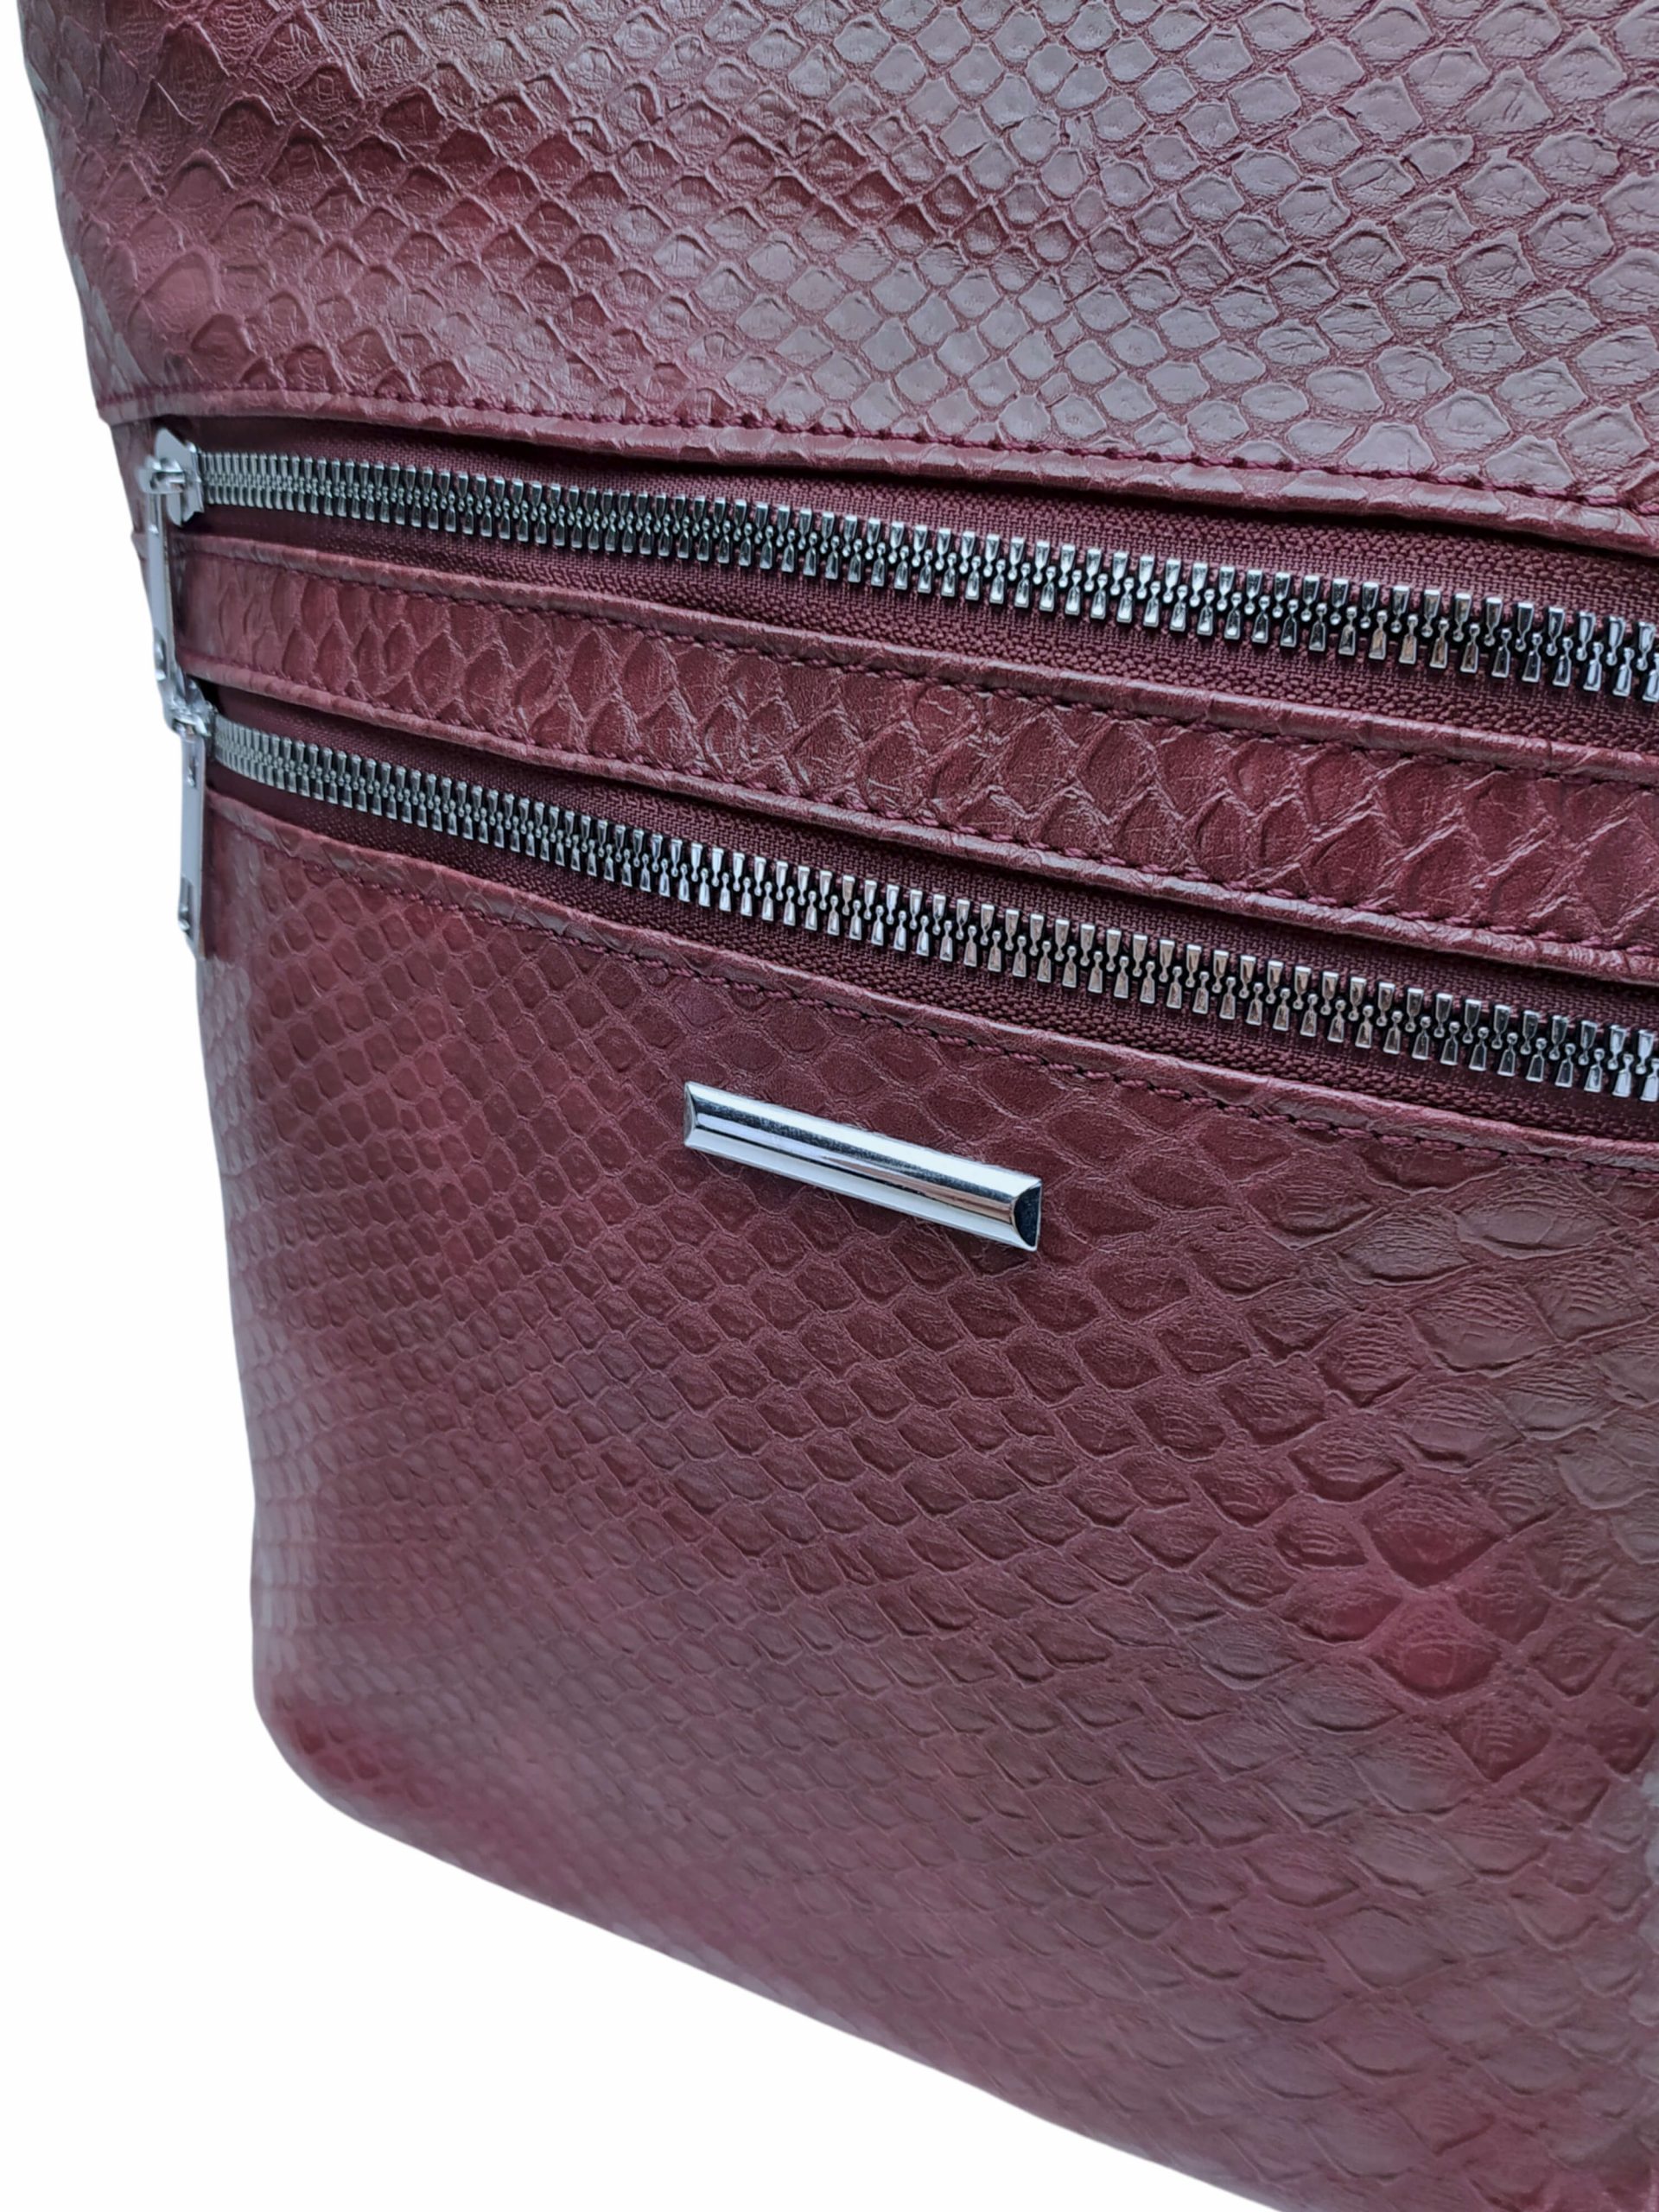 Vínová / bordó crossbody kabelka s imitací hadí kůže, New Berry, HB-093, detail crossbody kabelky